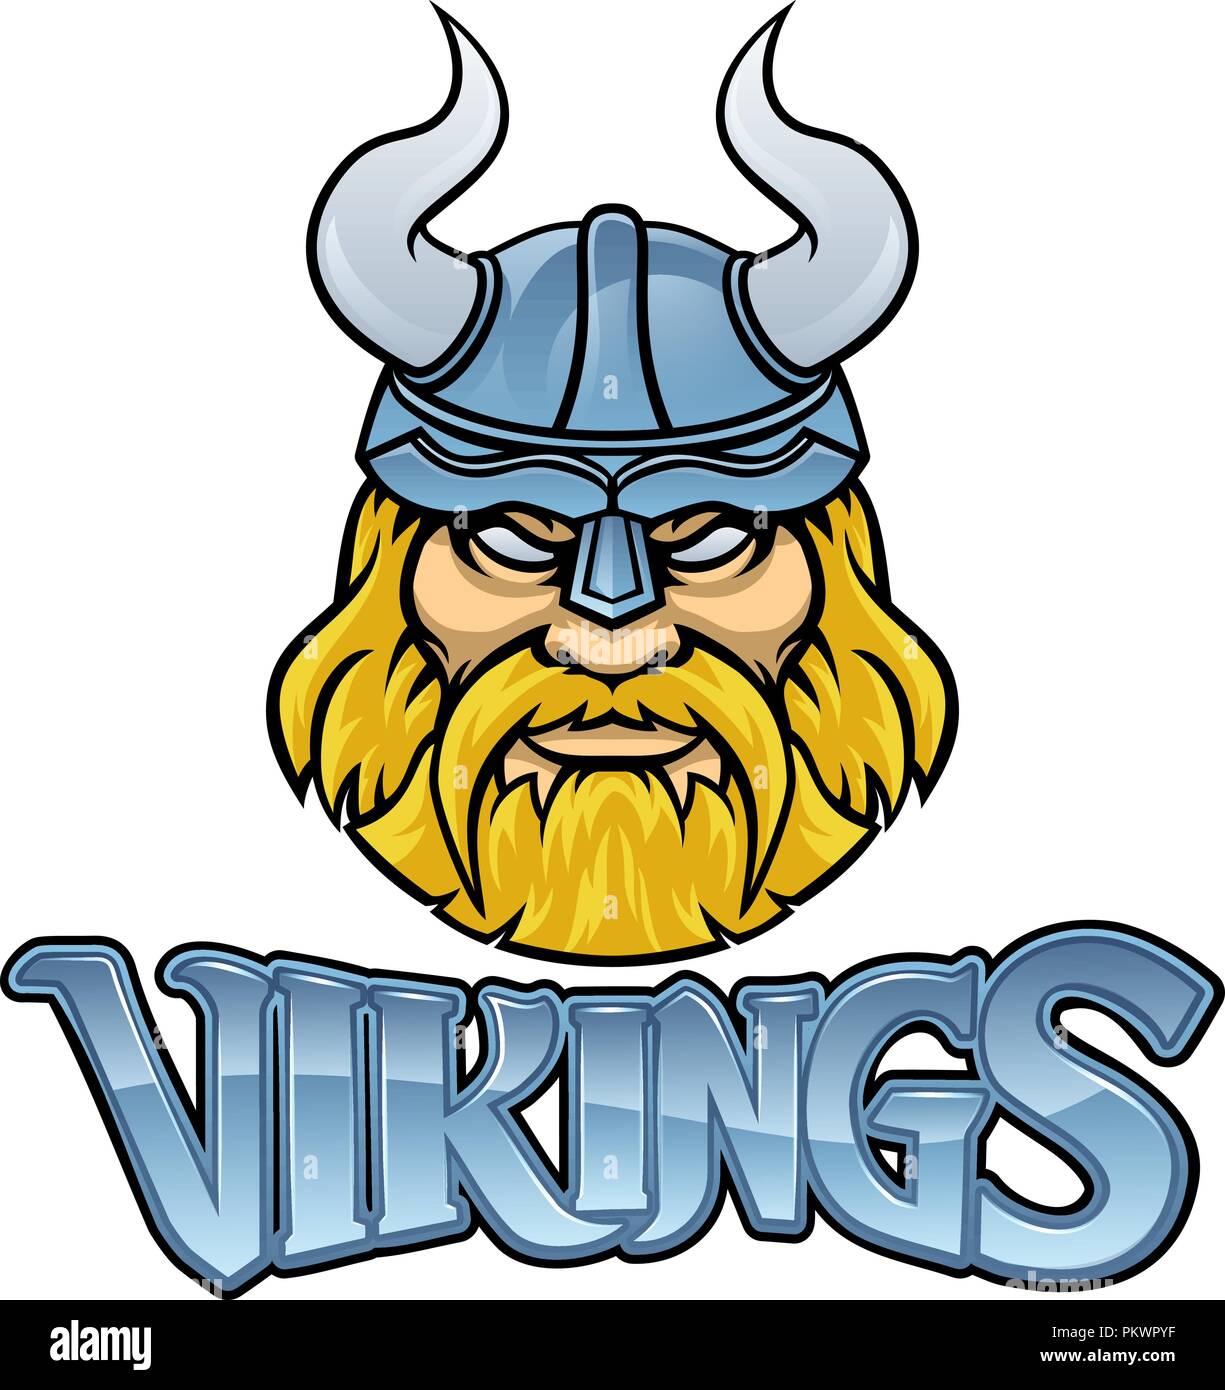 Viking Warrior Maskottchen Zeichen Grafik Stock Vektor